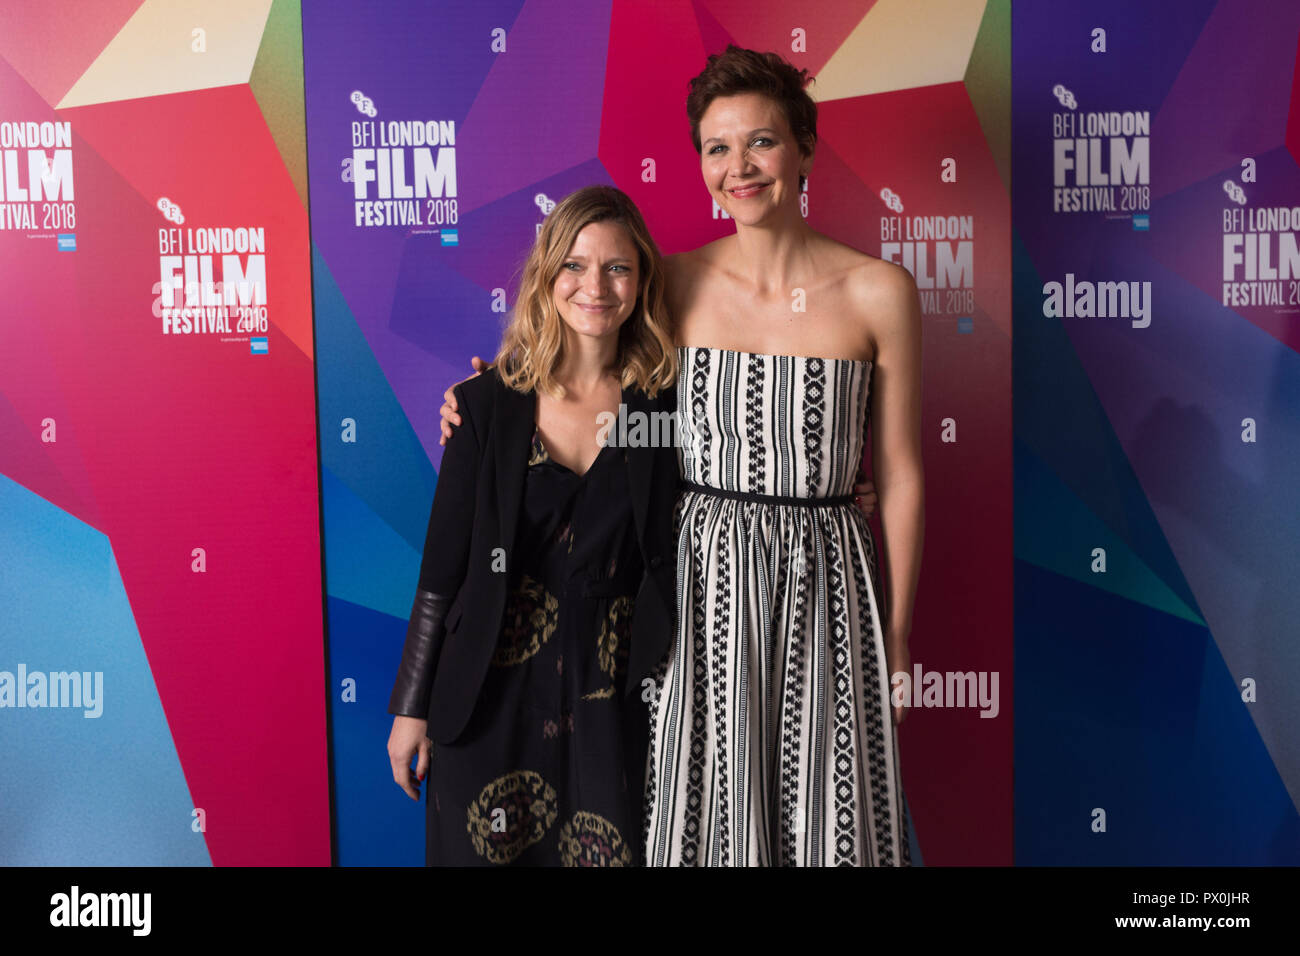 Sara Colangelo, Réalisateur/Scénariste (à gauche) et Maggie Gyllenhaal arrivent à un examen préalable de l'enseignant de maternelle à Picturehouse, Central London pour la 62e session de BFI London Film Festival. Banque D'Images